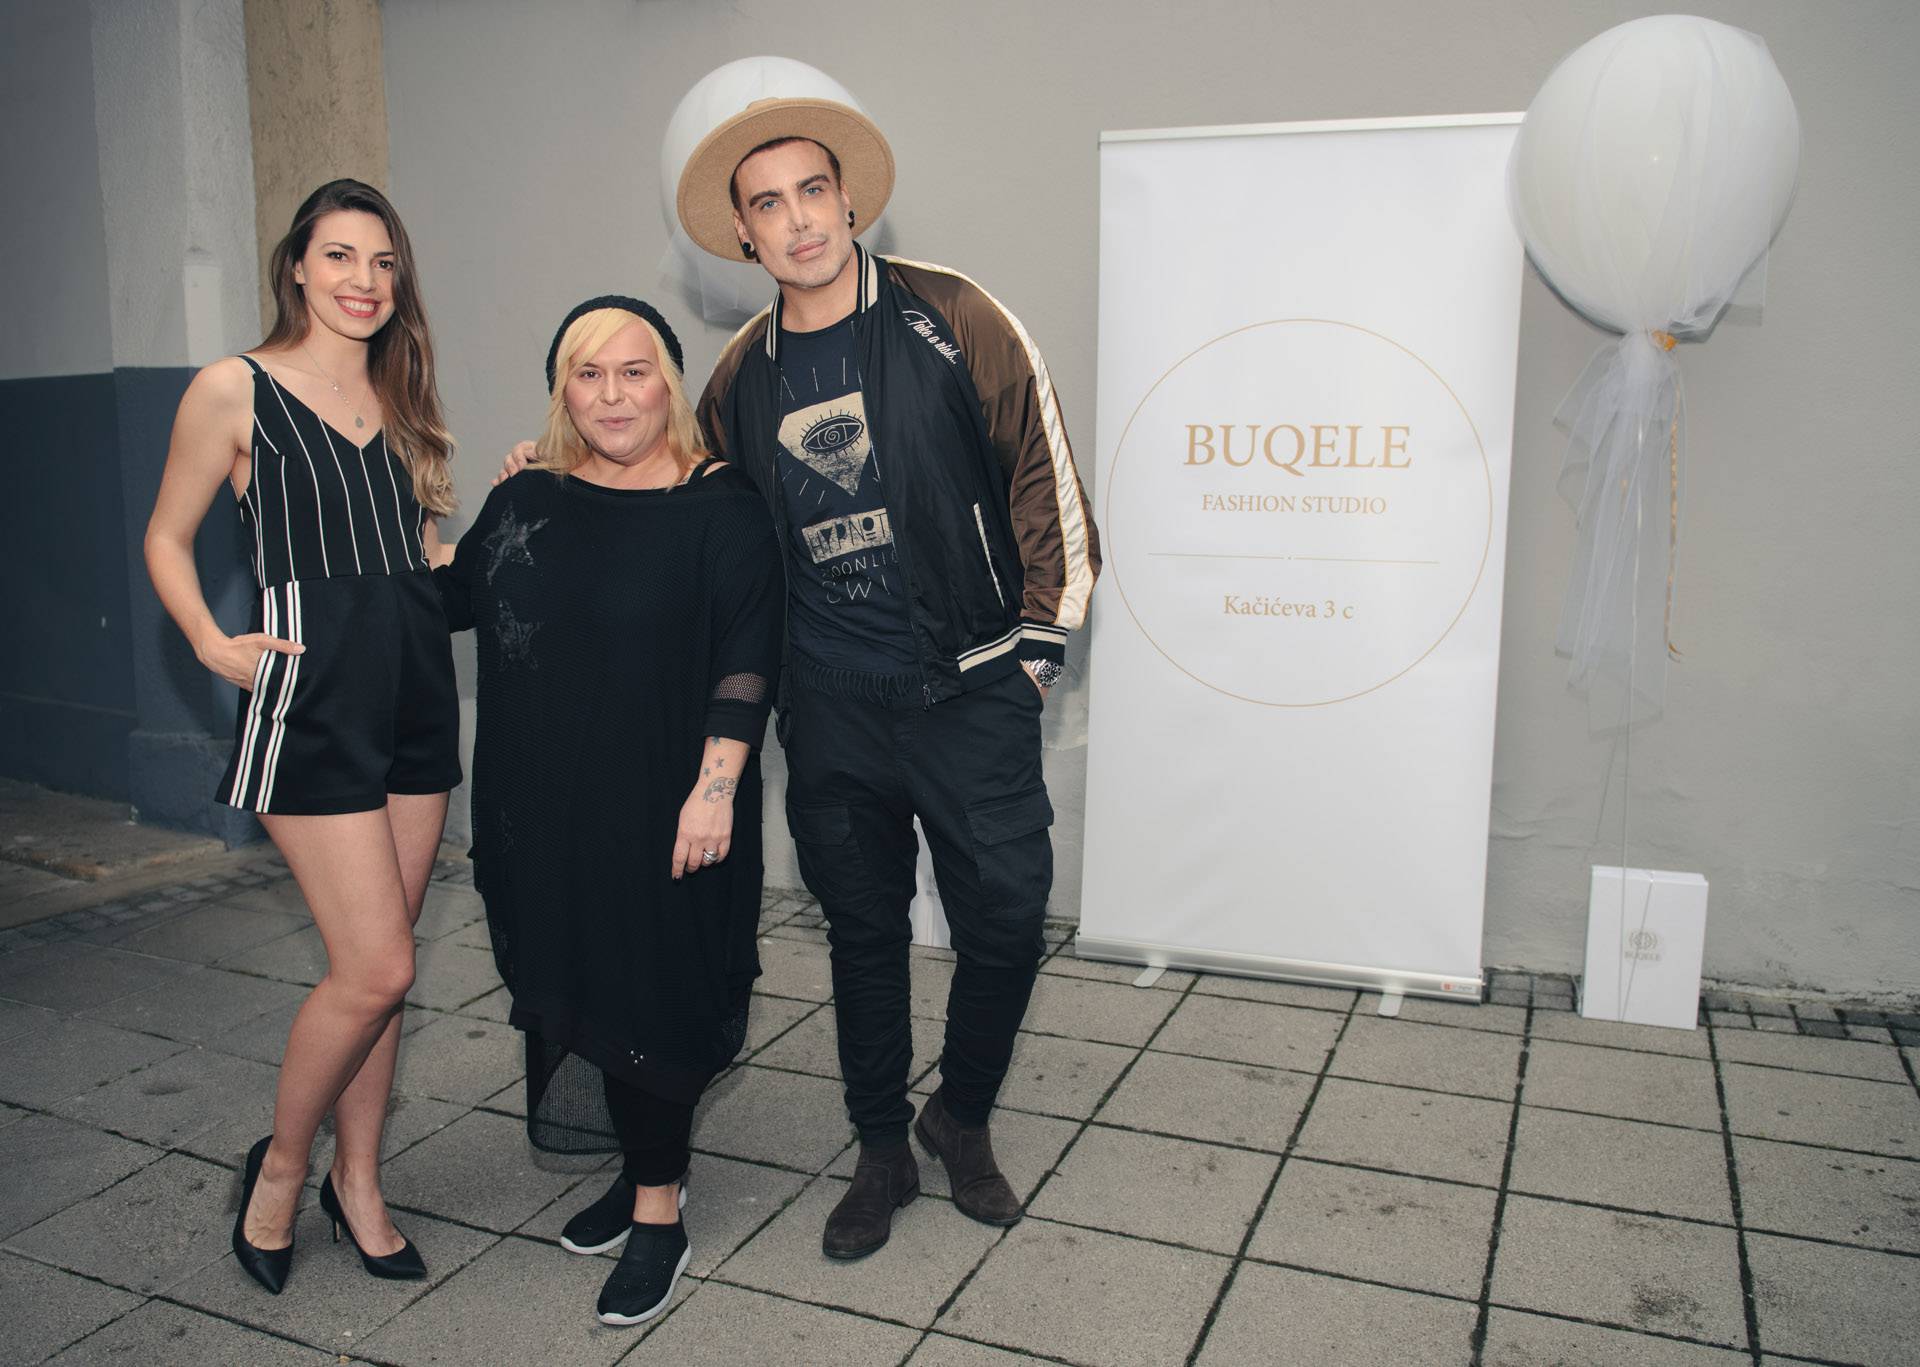 Nogometaš Bručić sa sestrom Mateom otvorio fashion studio